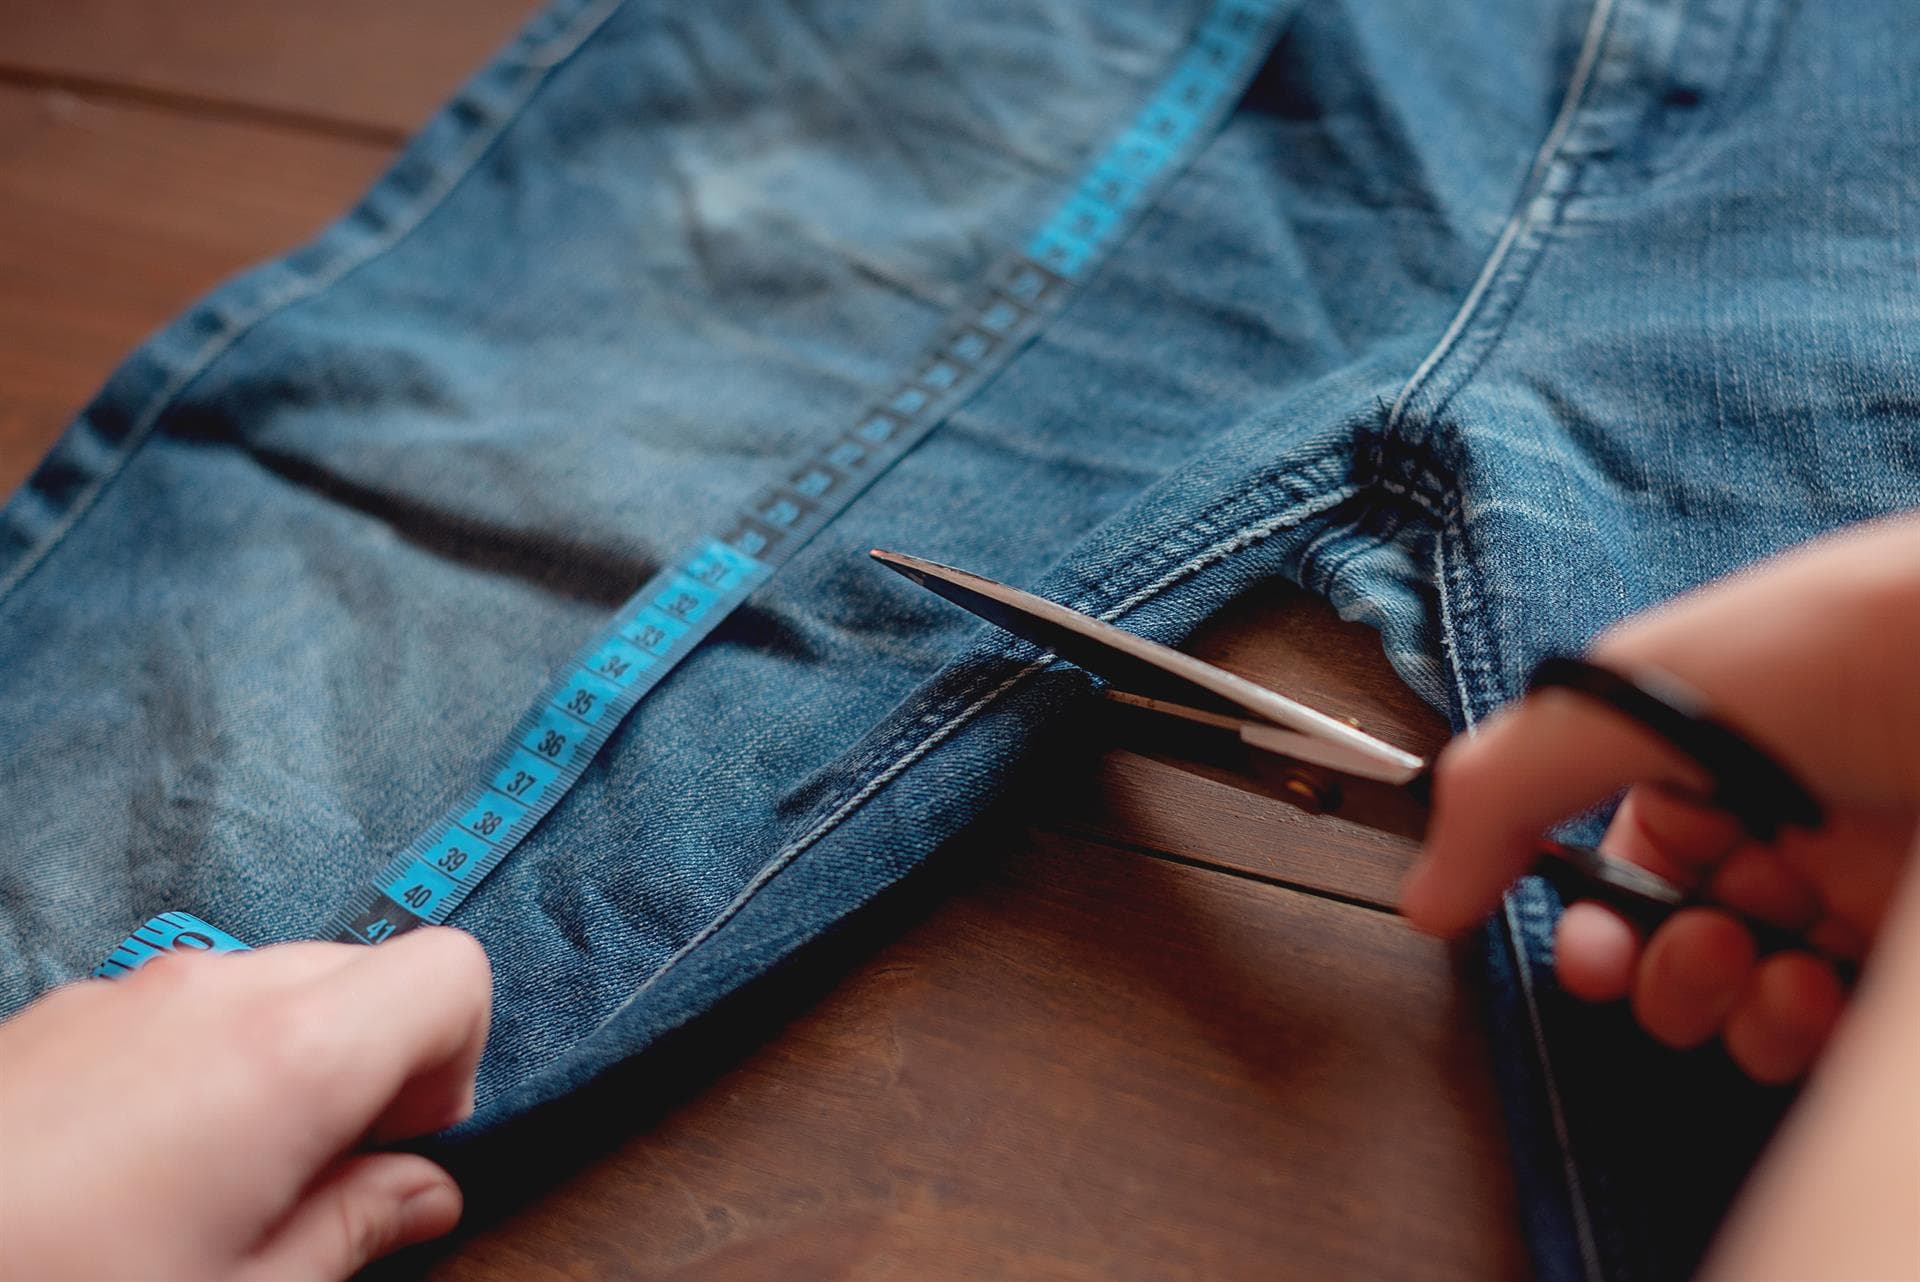  Confía en una costurera para arreglar tu ropa y crear productos a tu gusto